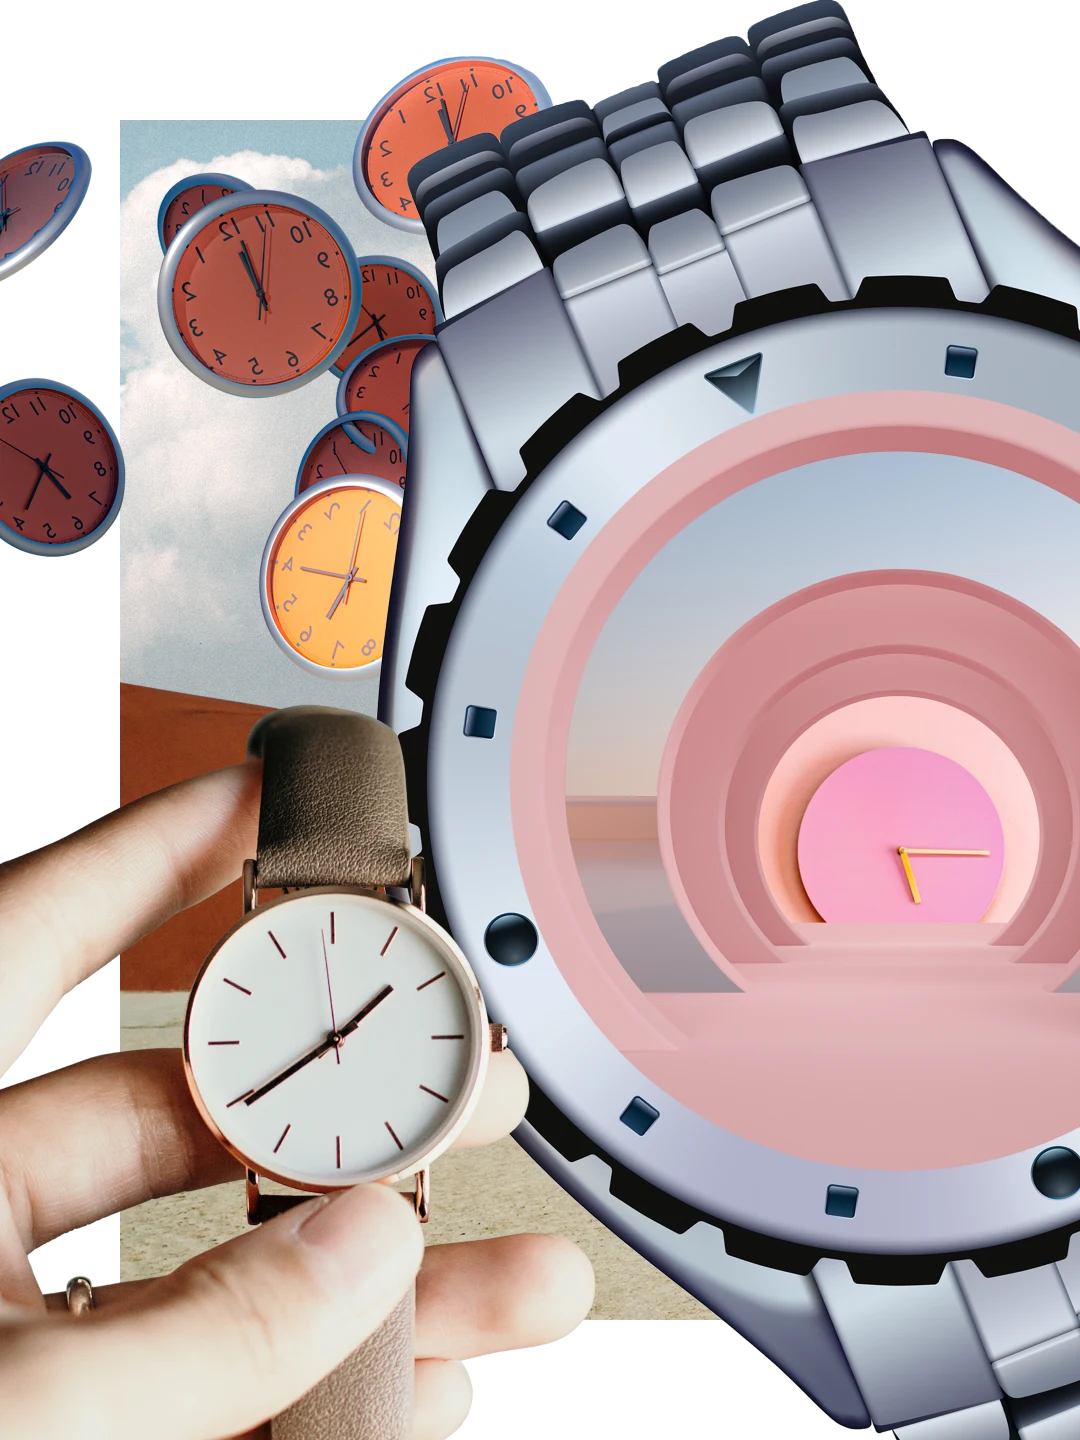 Eine Collage mit verschiedenen Uhren und Armbanduhren. Eine weiße Hand hält eine Armbanduhr aus Leder. In der Mitte ist eine Armbanduhr aus Metall zu sehen. In ihr eine rosafarbene Wanduhr mit gelben Zeigern. Armbanduhren in Braun und Gold, die vor Wolken schweben.
